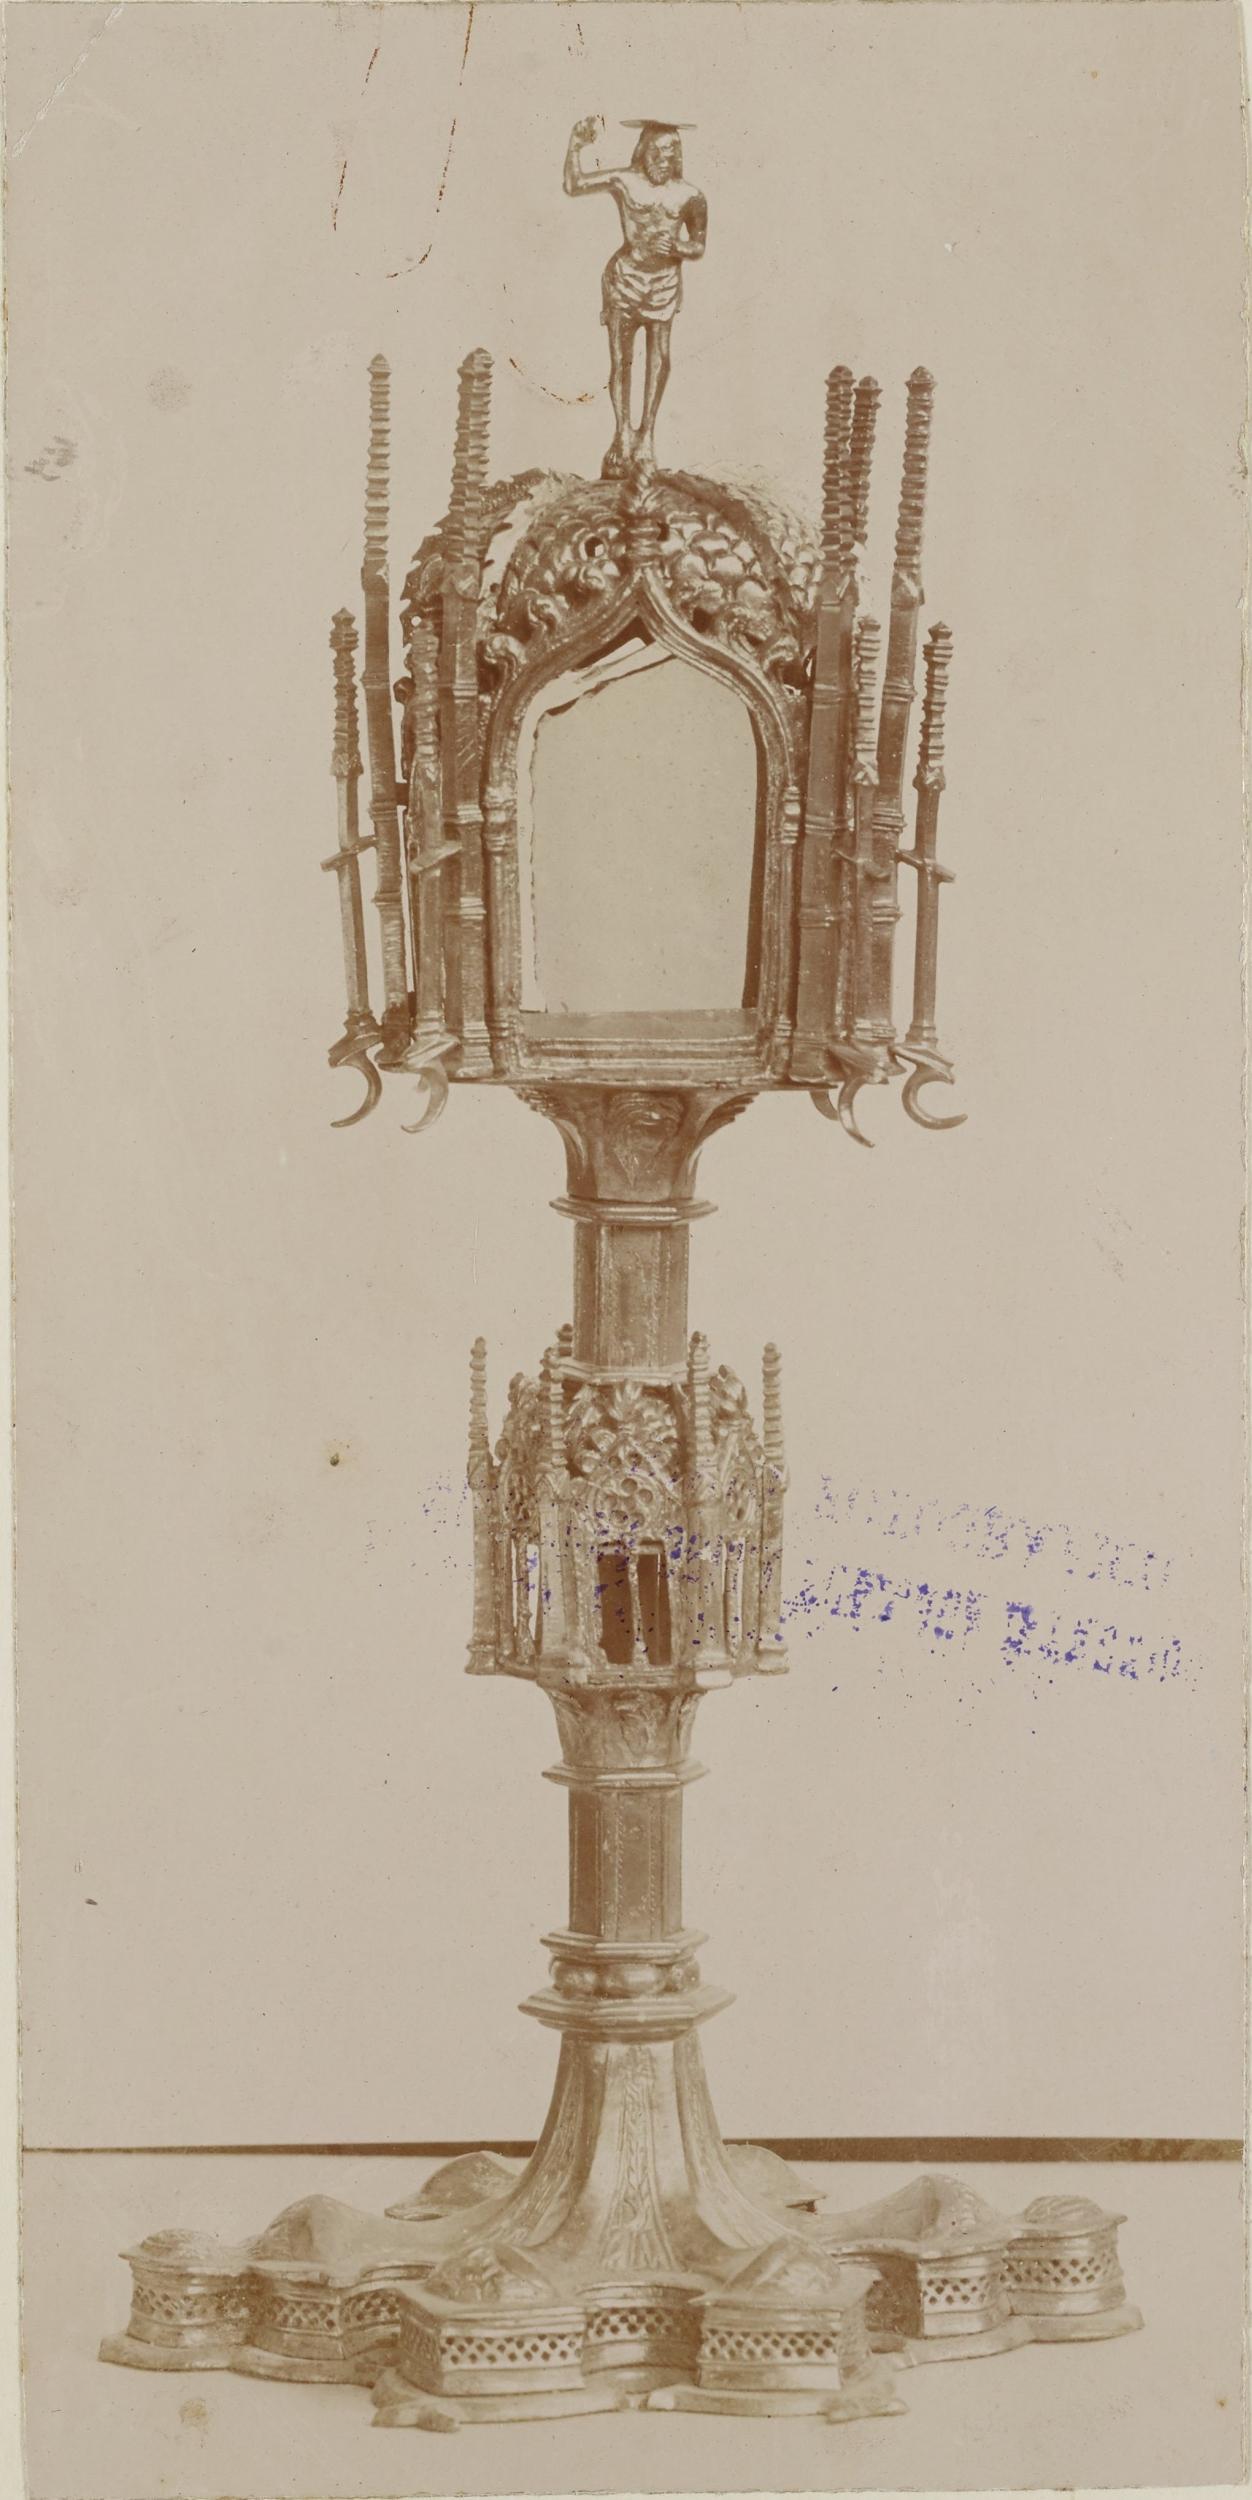 Fotografo non identificato, Bitonto - Cattedrale di S. Valentino, tesoro, reliquario, 1876-1900, albumina/carta, MPI137890